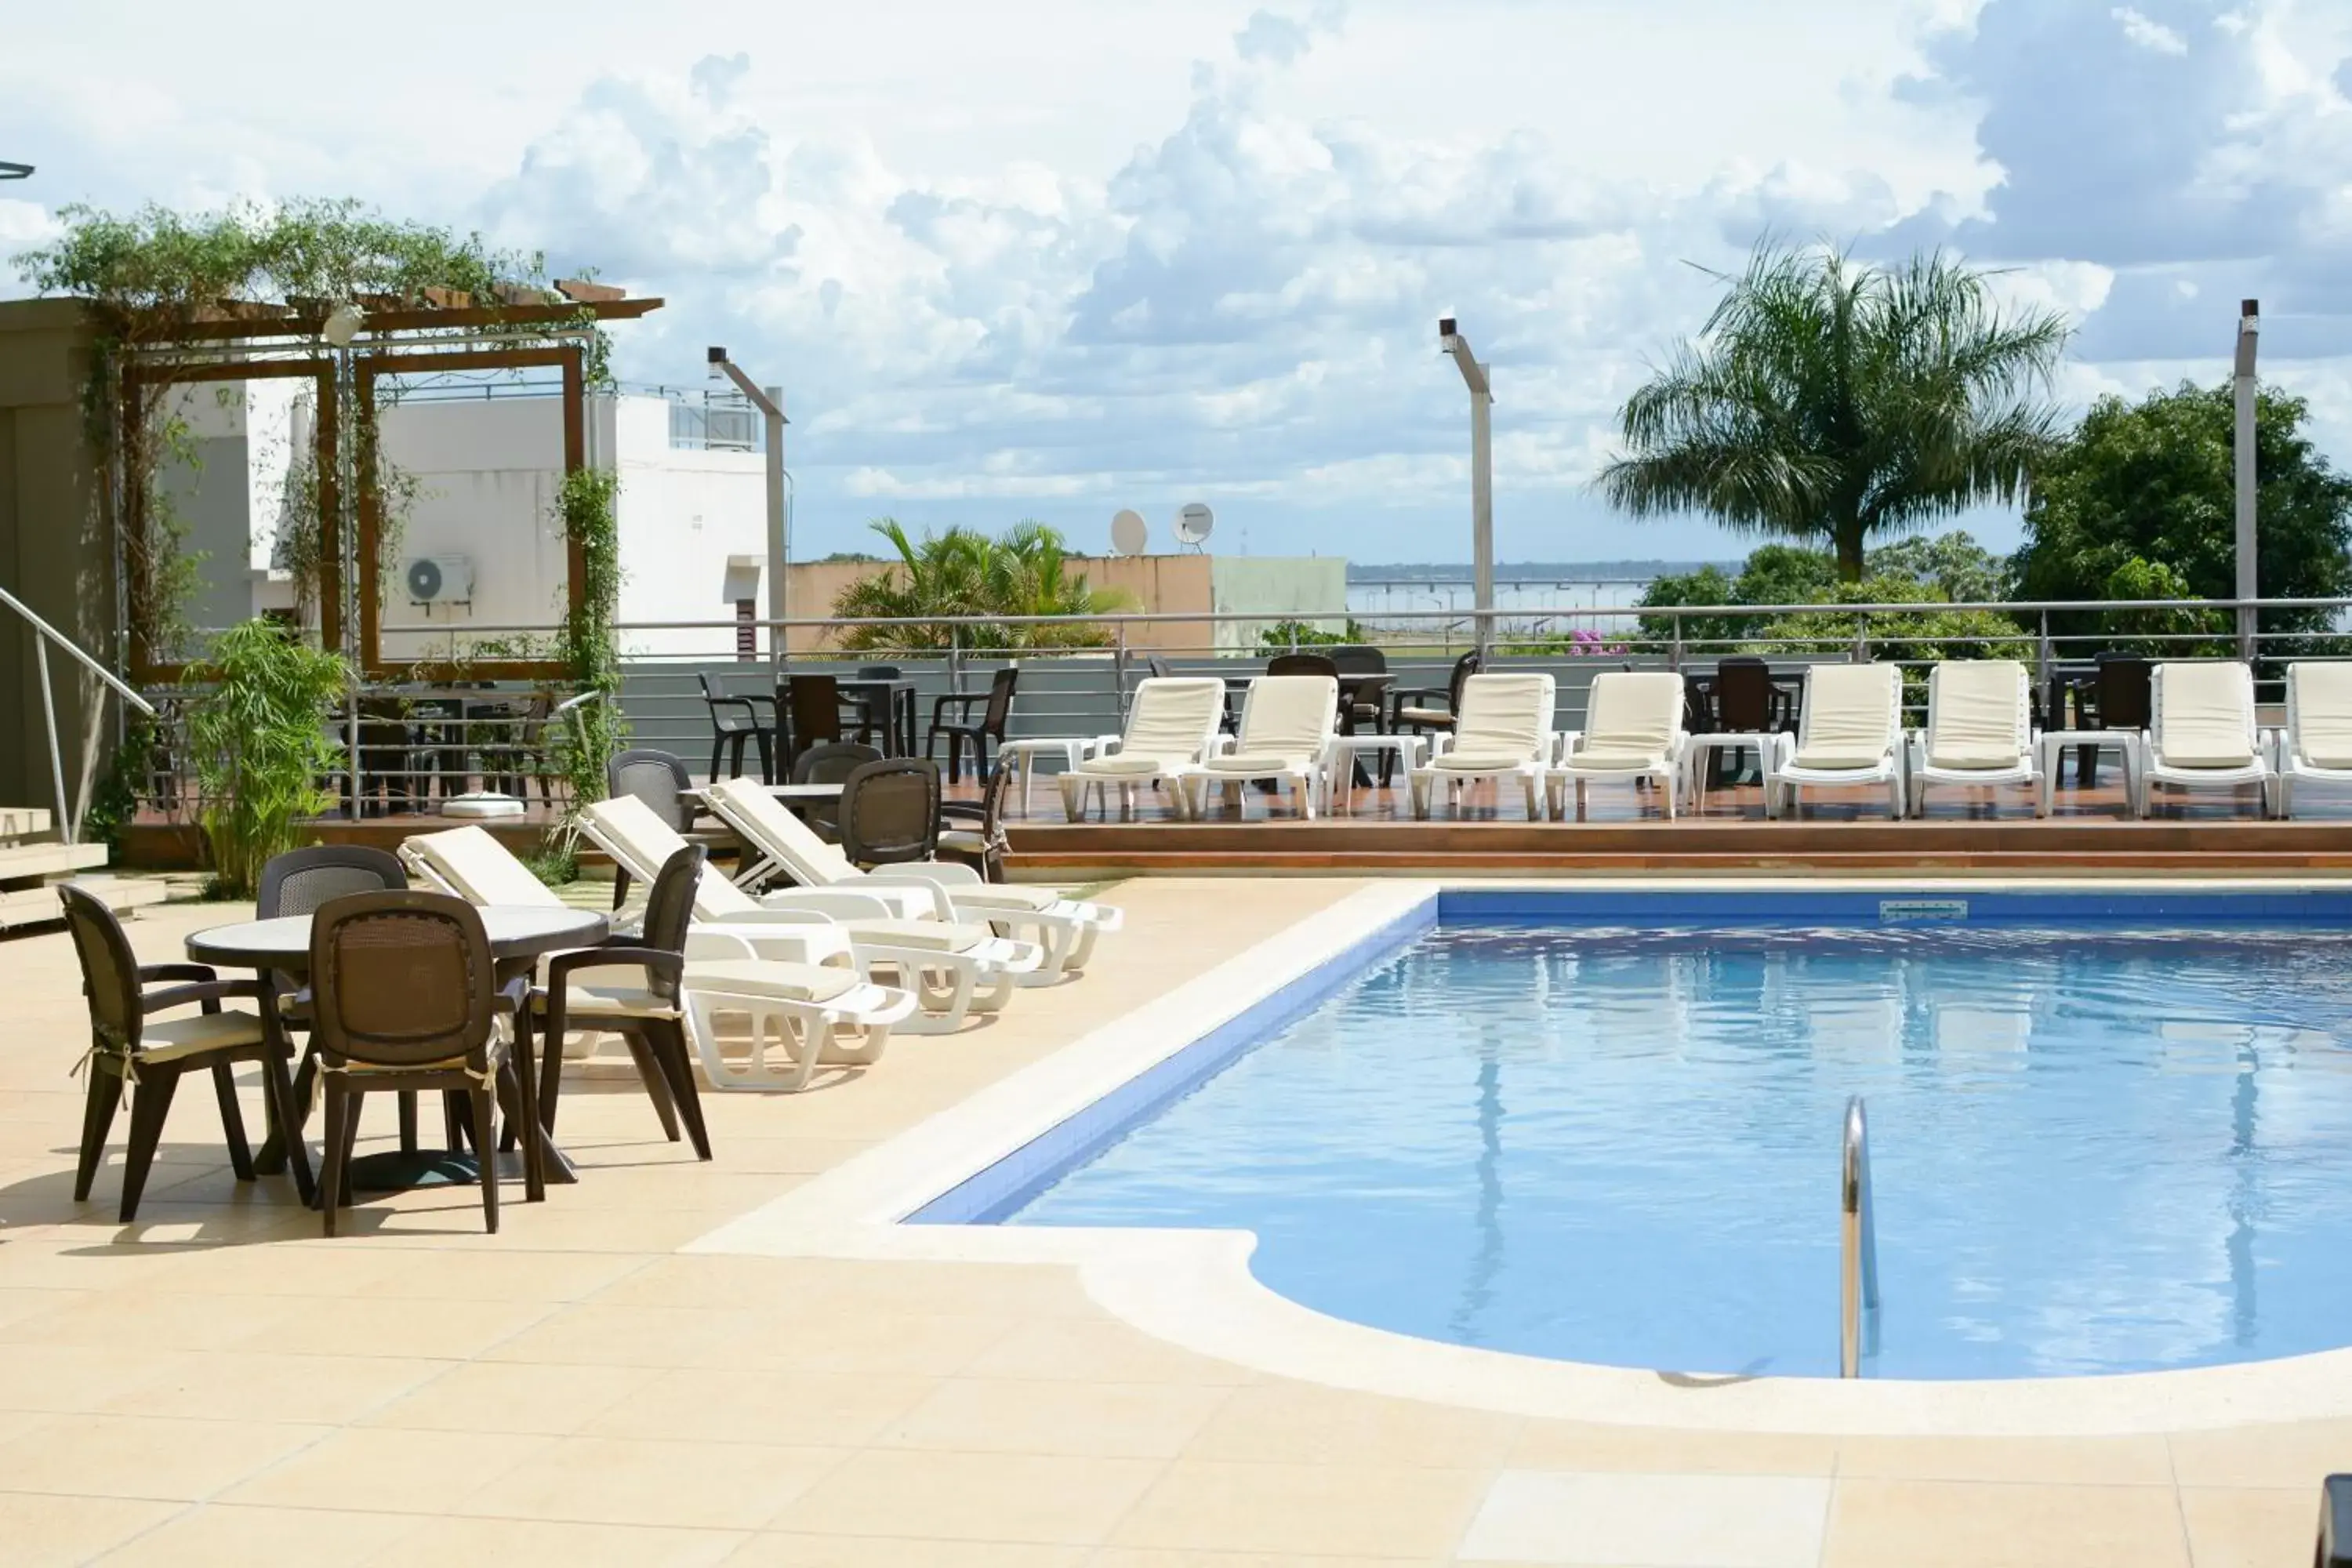 Swimming Pool in De la Trinidad Hotel